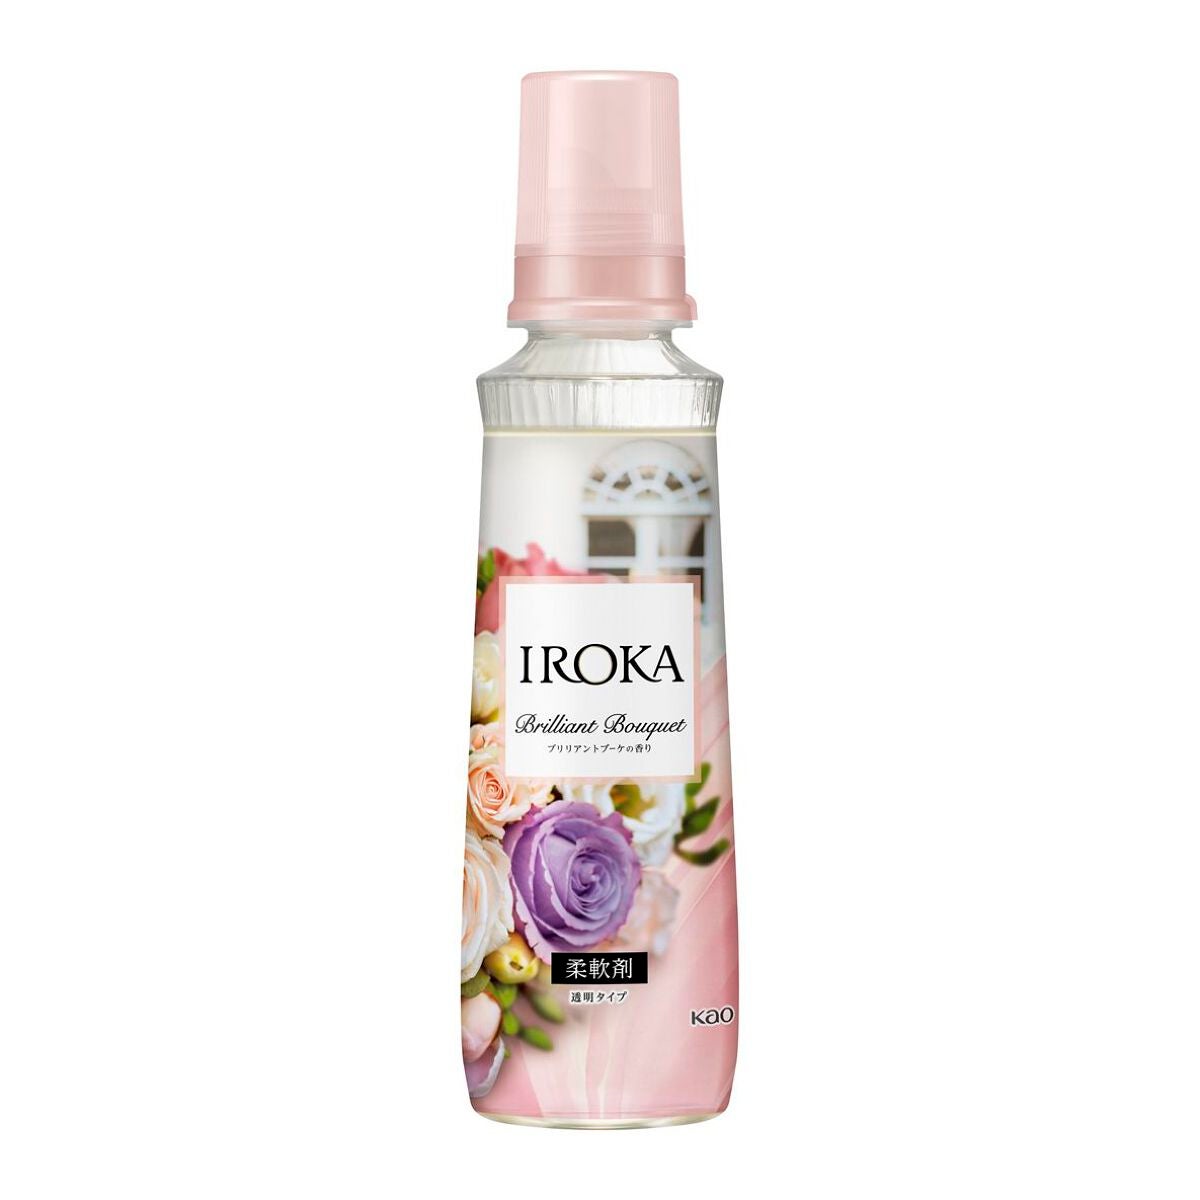 試してみた】IROKA ブリリアントブーケの香り / IROKAのリアルな口コミ 